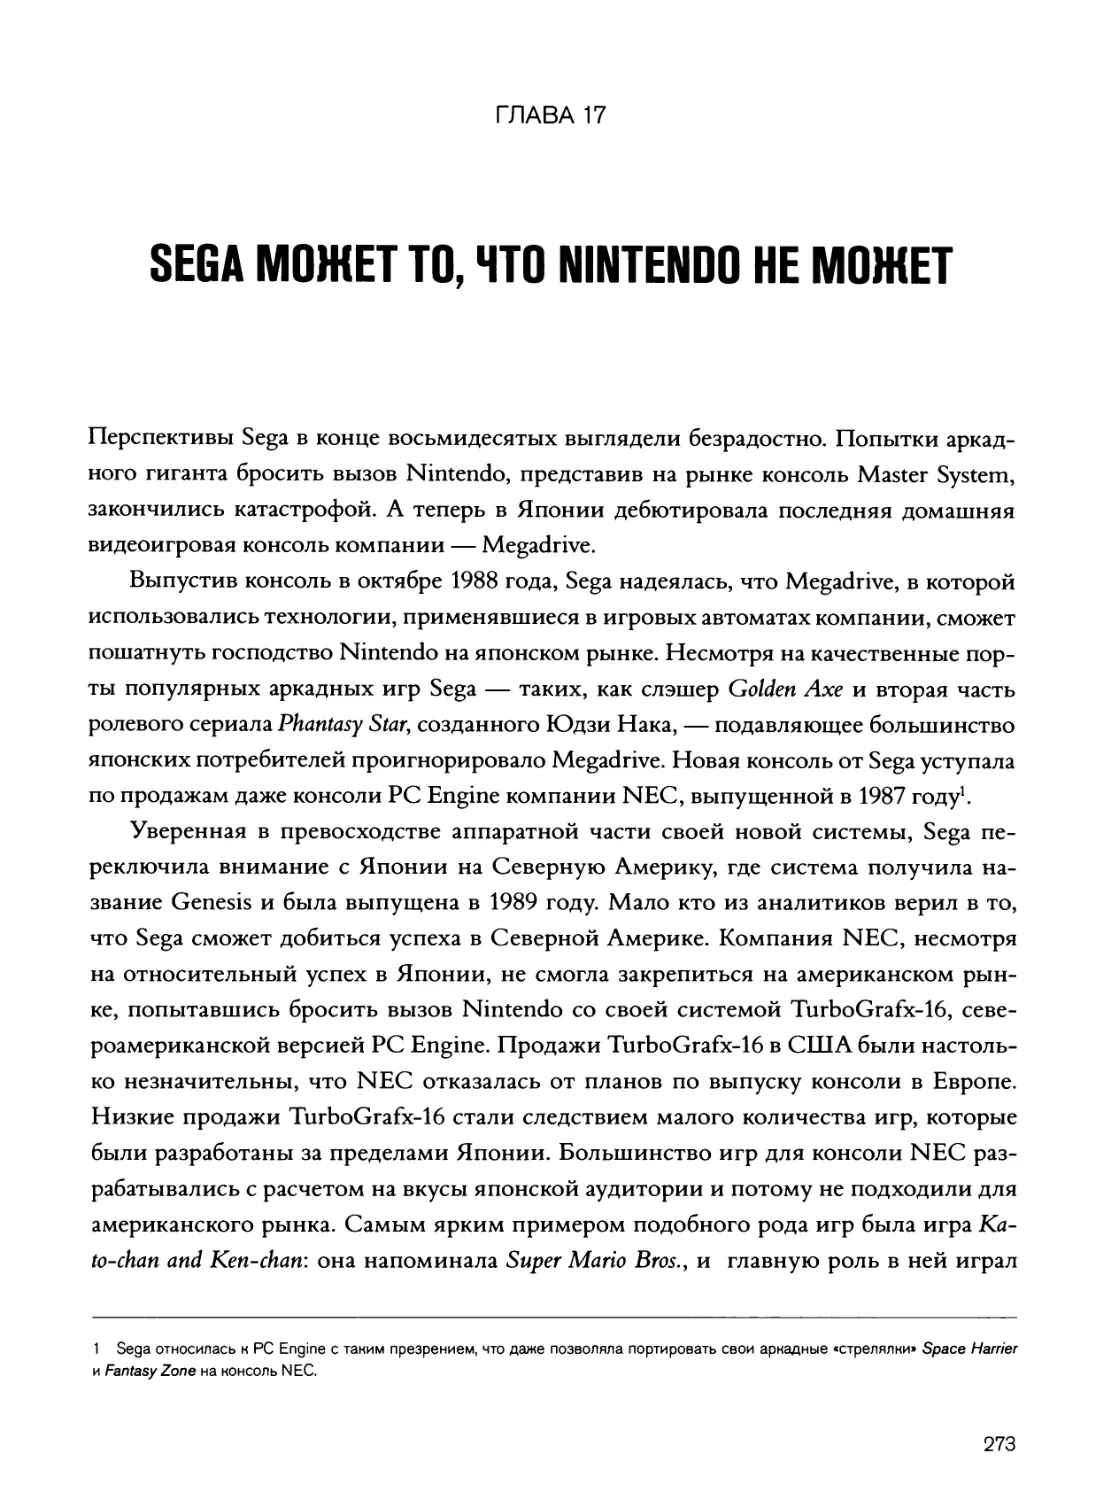 Глава 17: Sega может то, что Nintendo не может